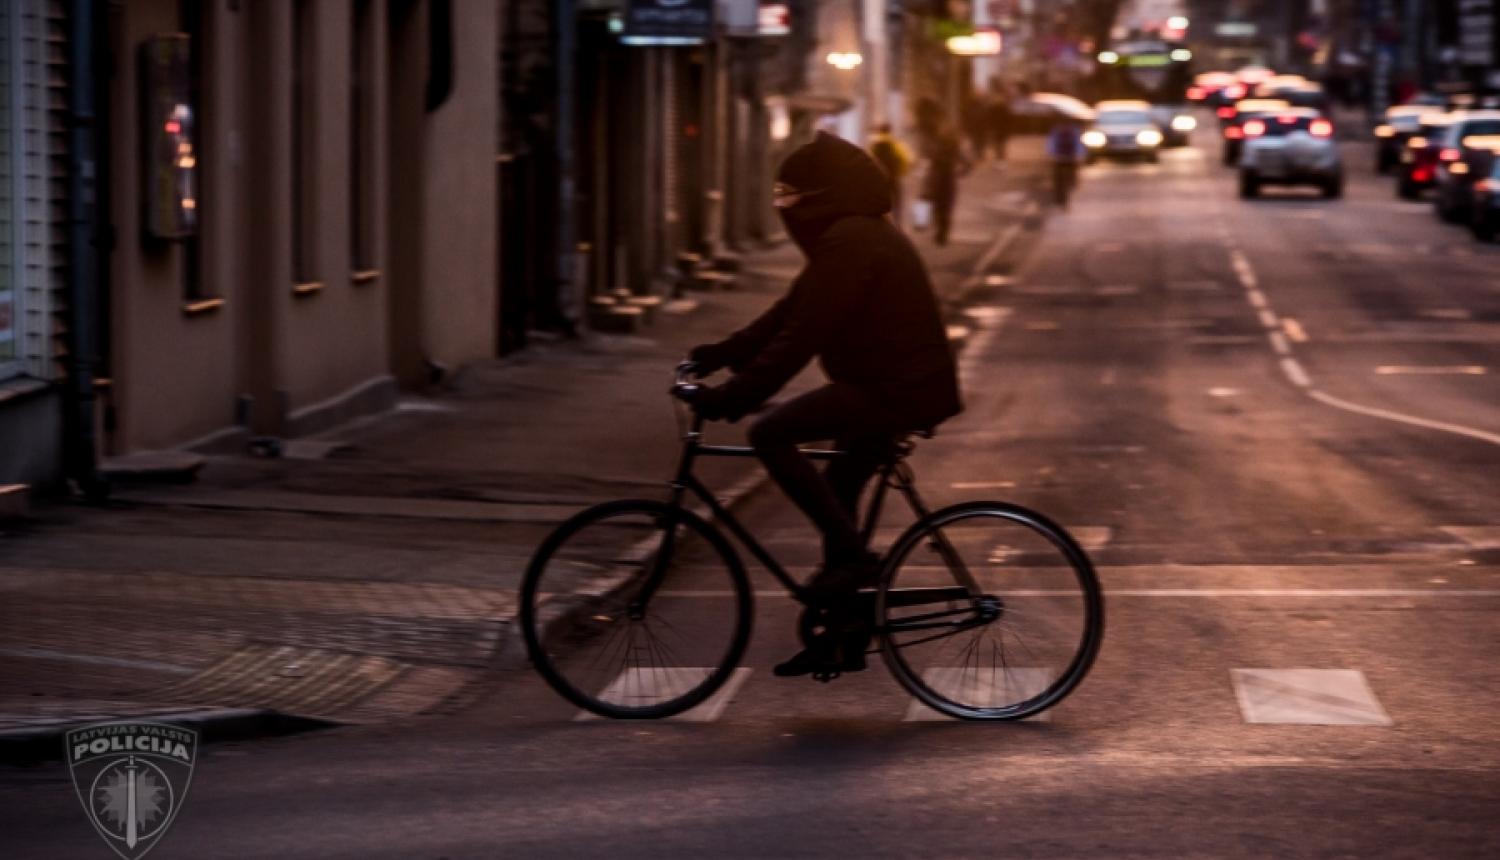 Kāpņu telpā novietots velosipēds kļūst par vilinājumu zaglim: Juglā aizturēts garnadzis